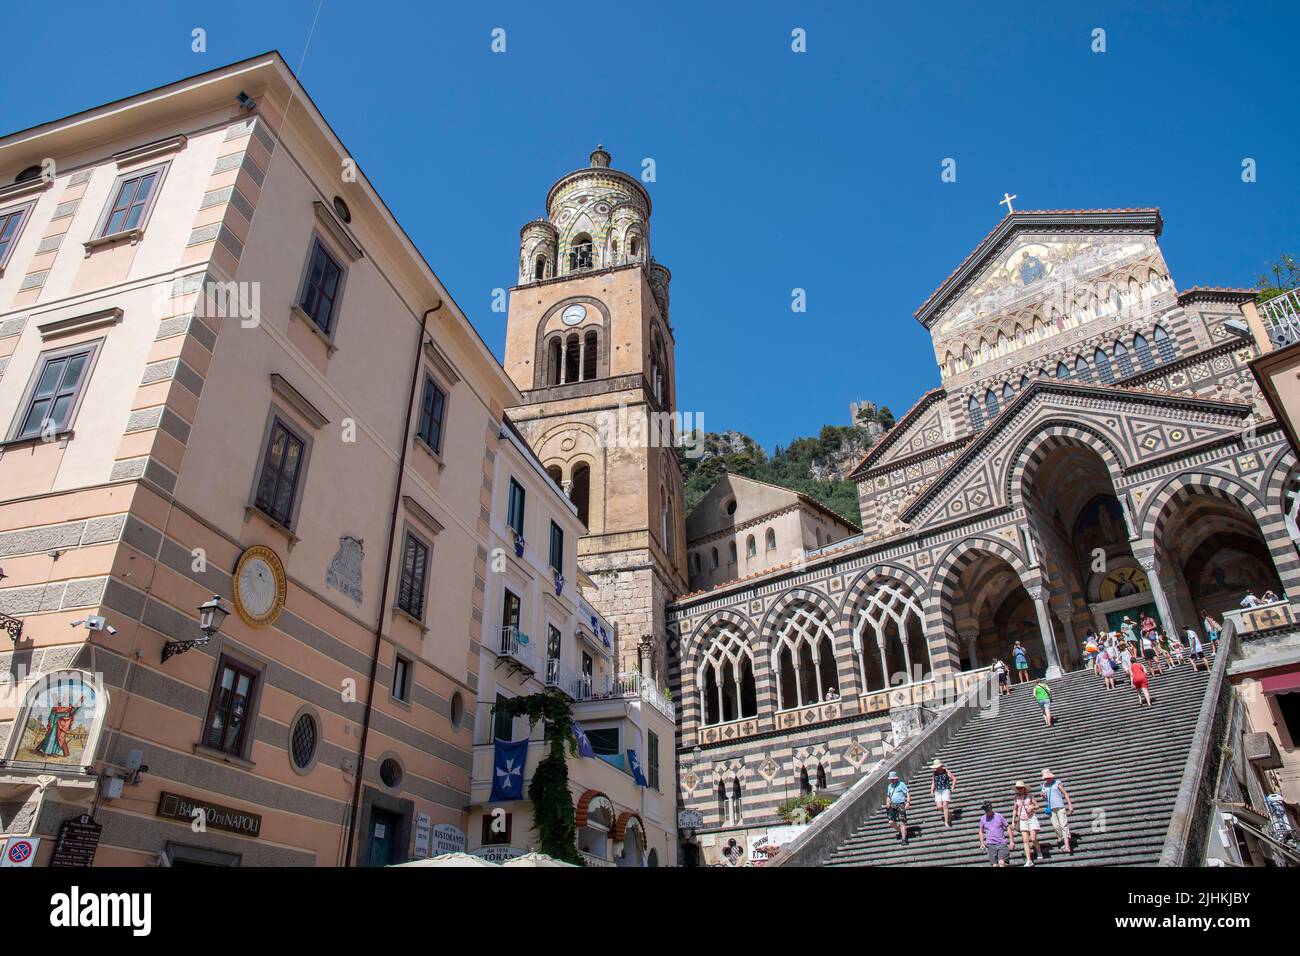 La ciudad de Amalfi, declarada Patrimonio de la Humanidad por la UNESCO, es una ciudad en un espectacular entorno natural que muestra la Catedral de San Andrés, la Piazza del Duomo, Foto de stock